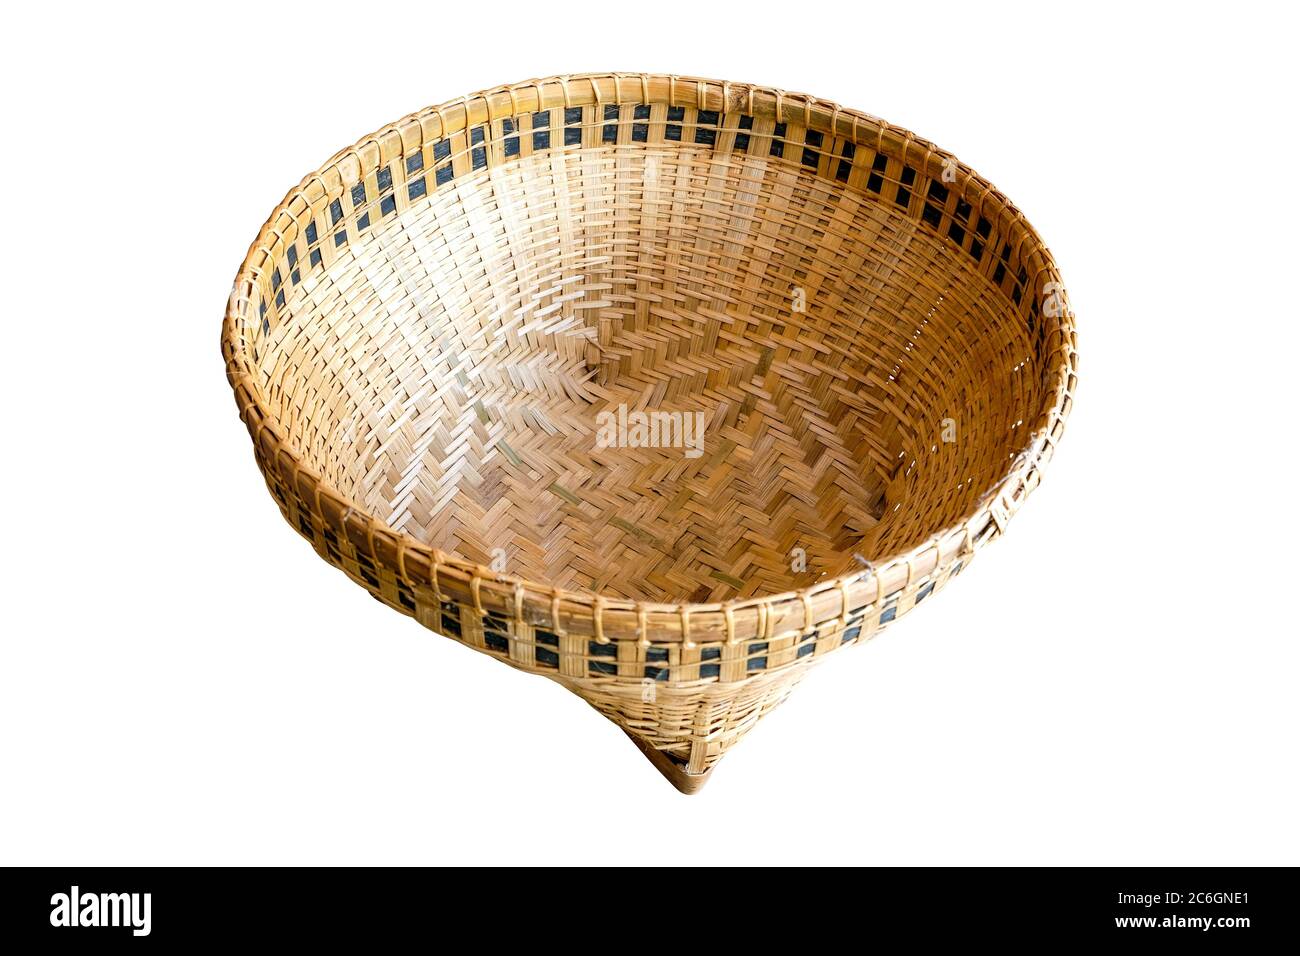 Bamboo basket, isolated on white background Stock Photo